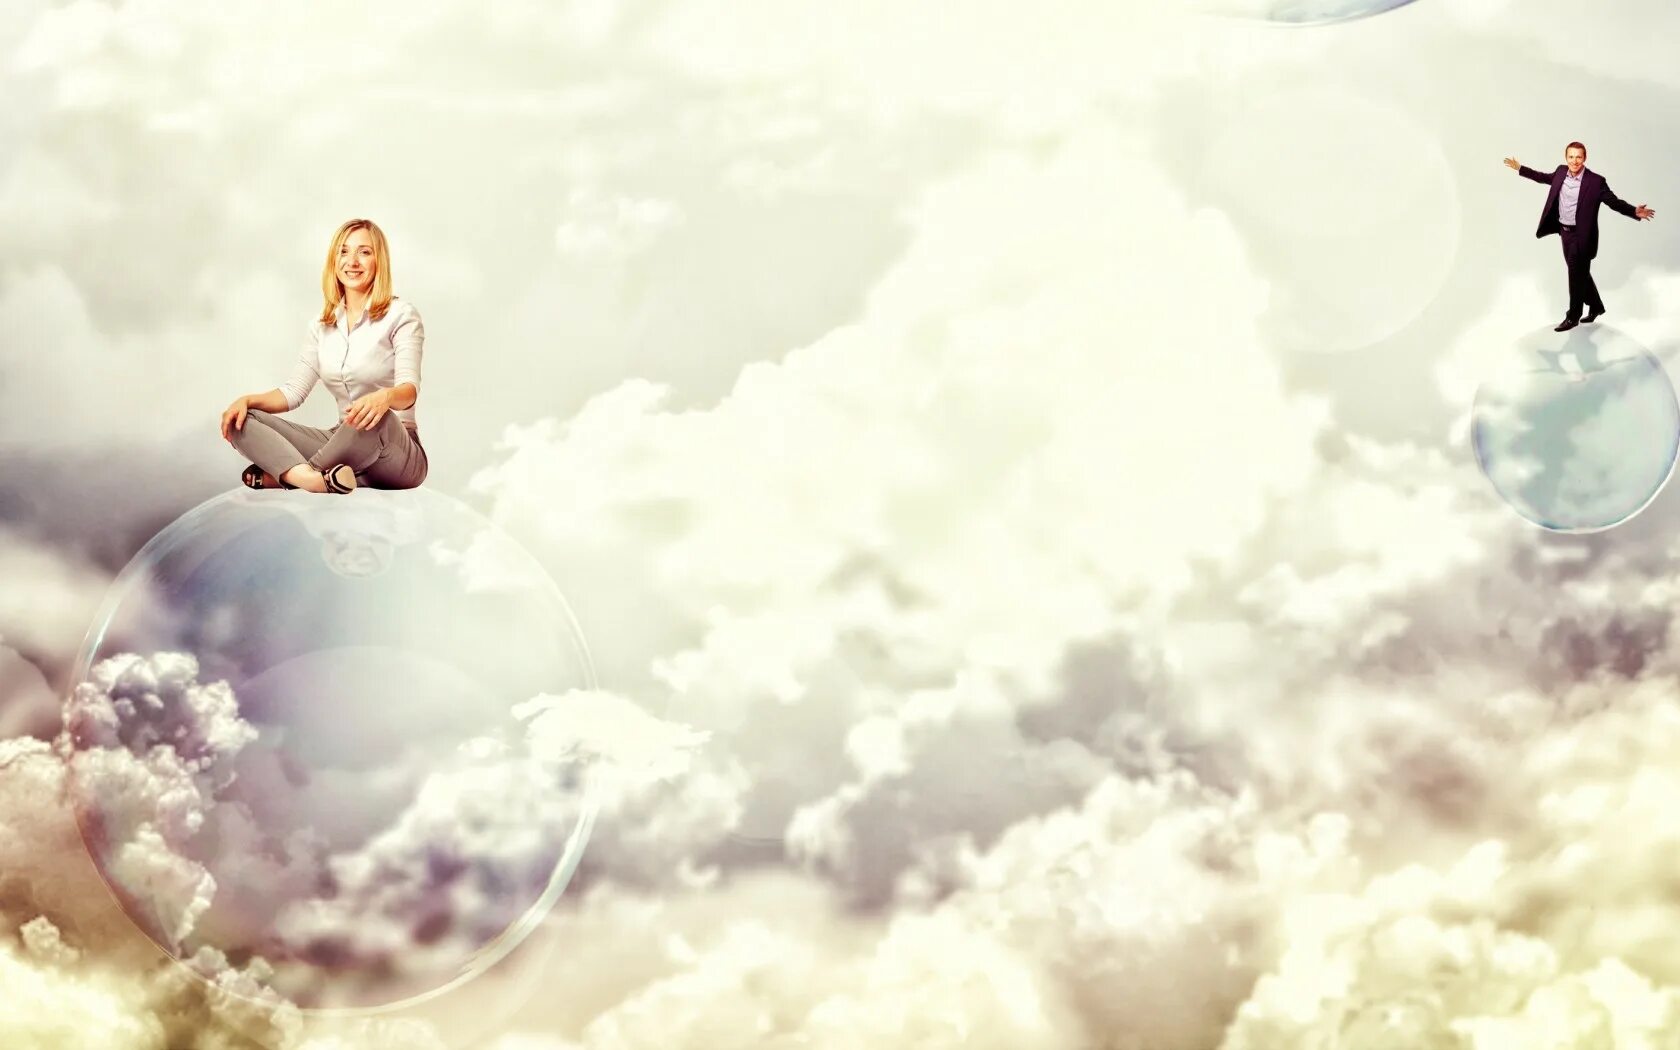 Человек переводит взгляд со страницы на облака. Человек на облаке. Девушка и небо. Девушка в облаках. Девушка сидит на облаке.